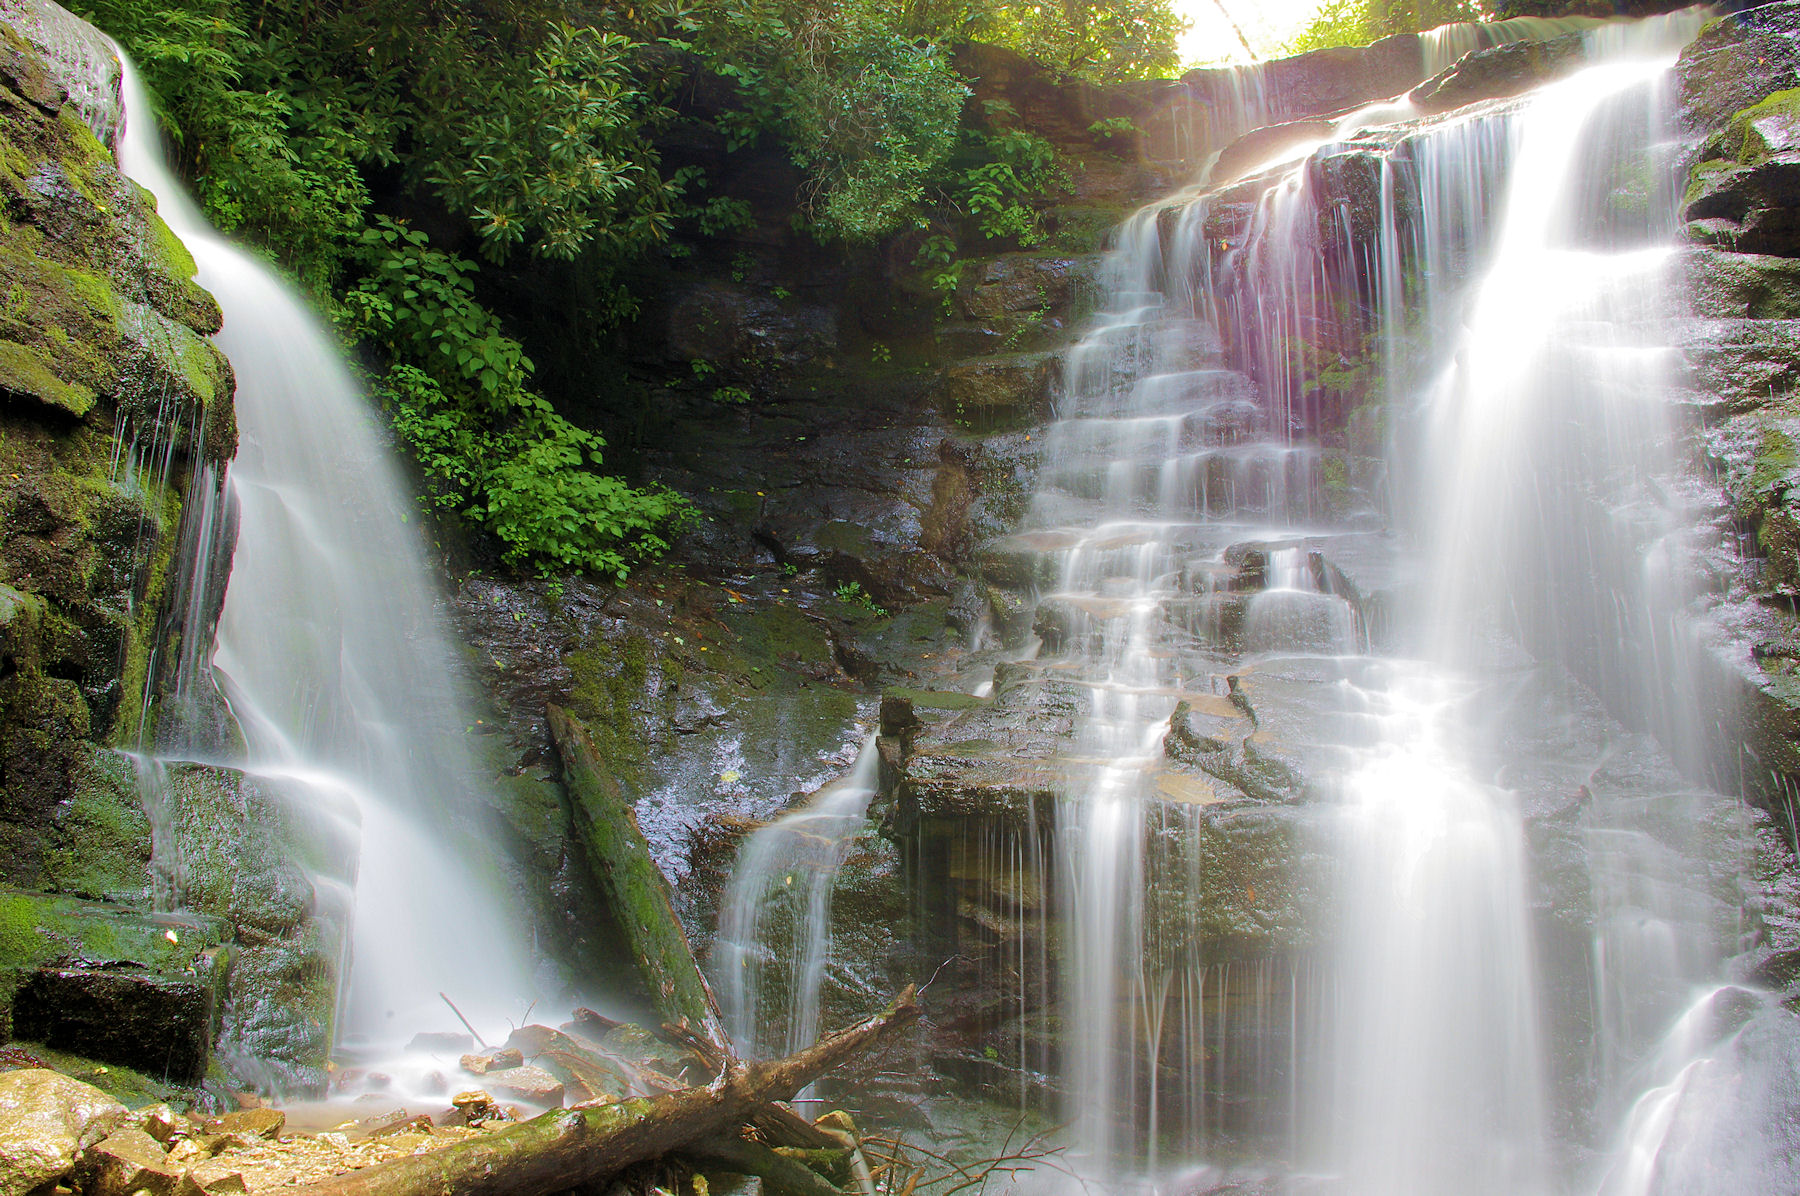 best waterfall hike near asheville